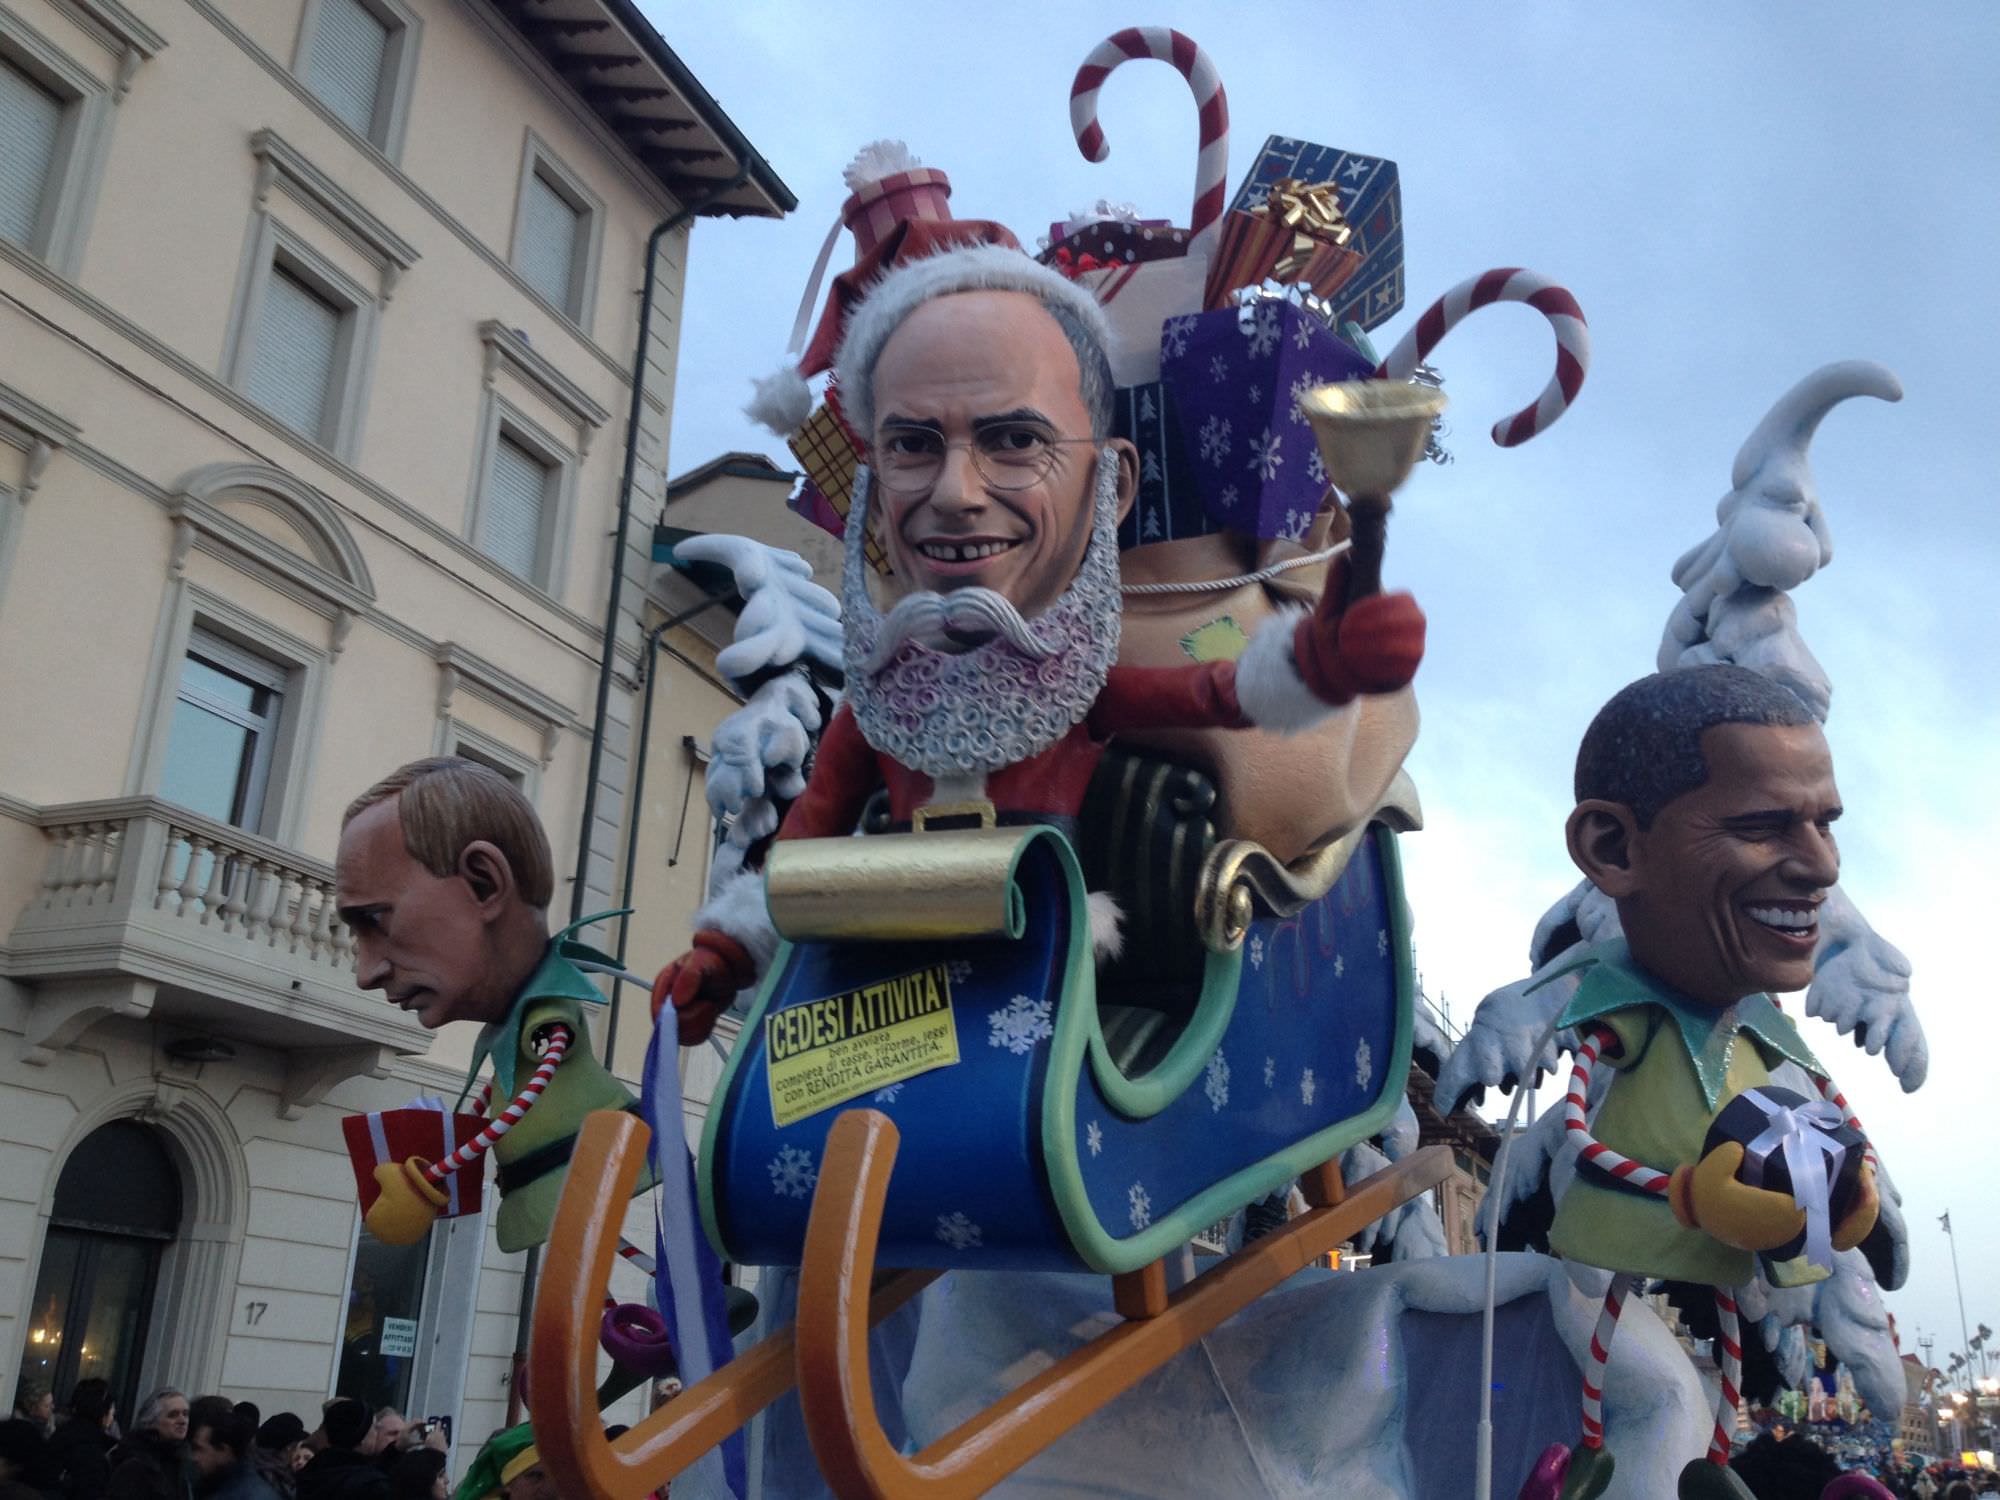 Carnevale di Viareggio 2014. Bertozzi non si ferma più, vince ancora nelle mascherate di gruppo